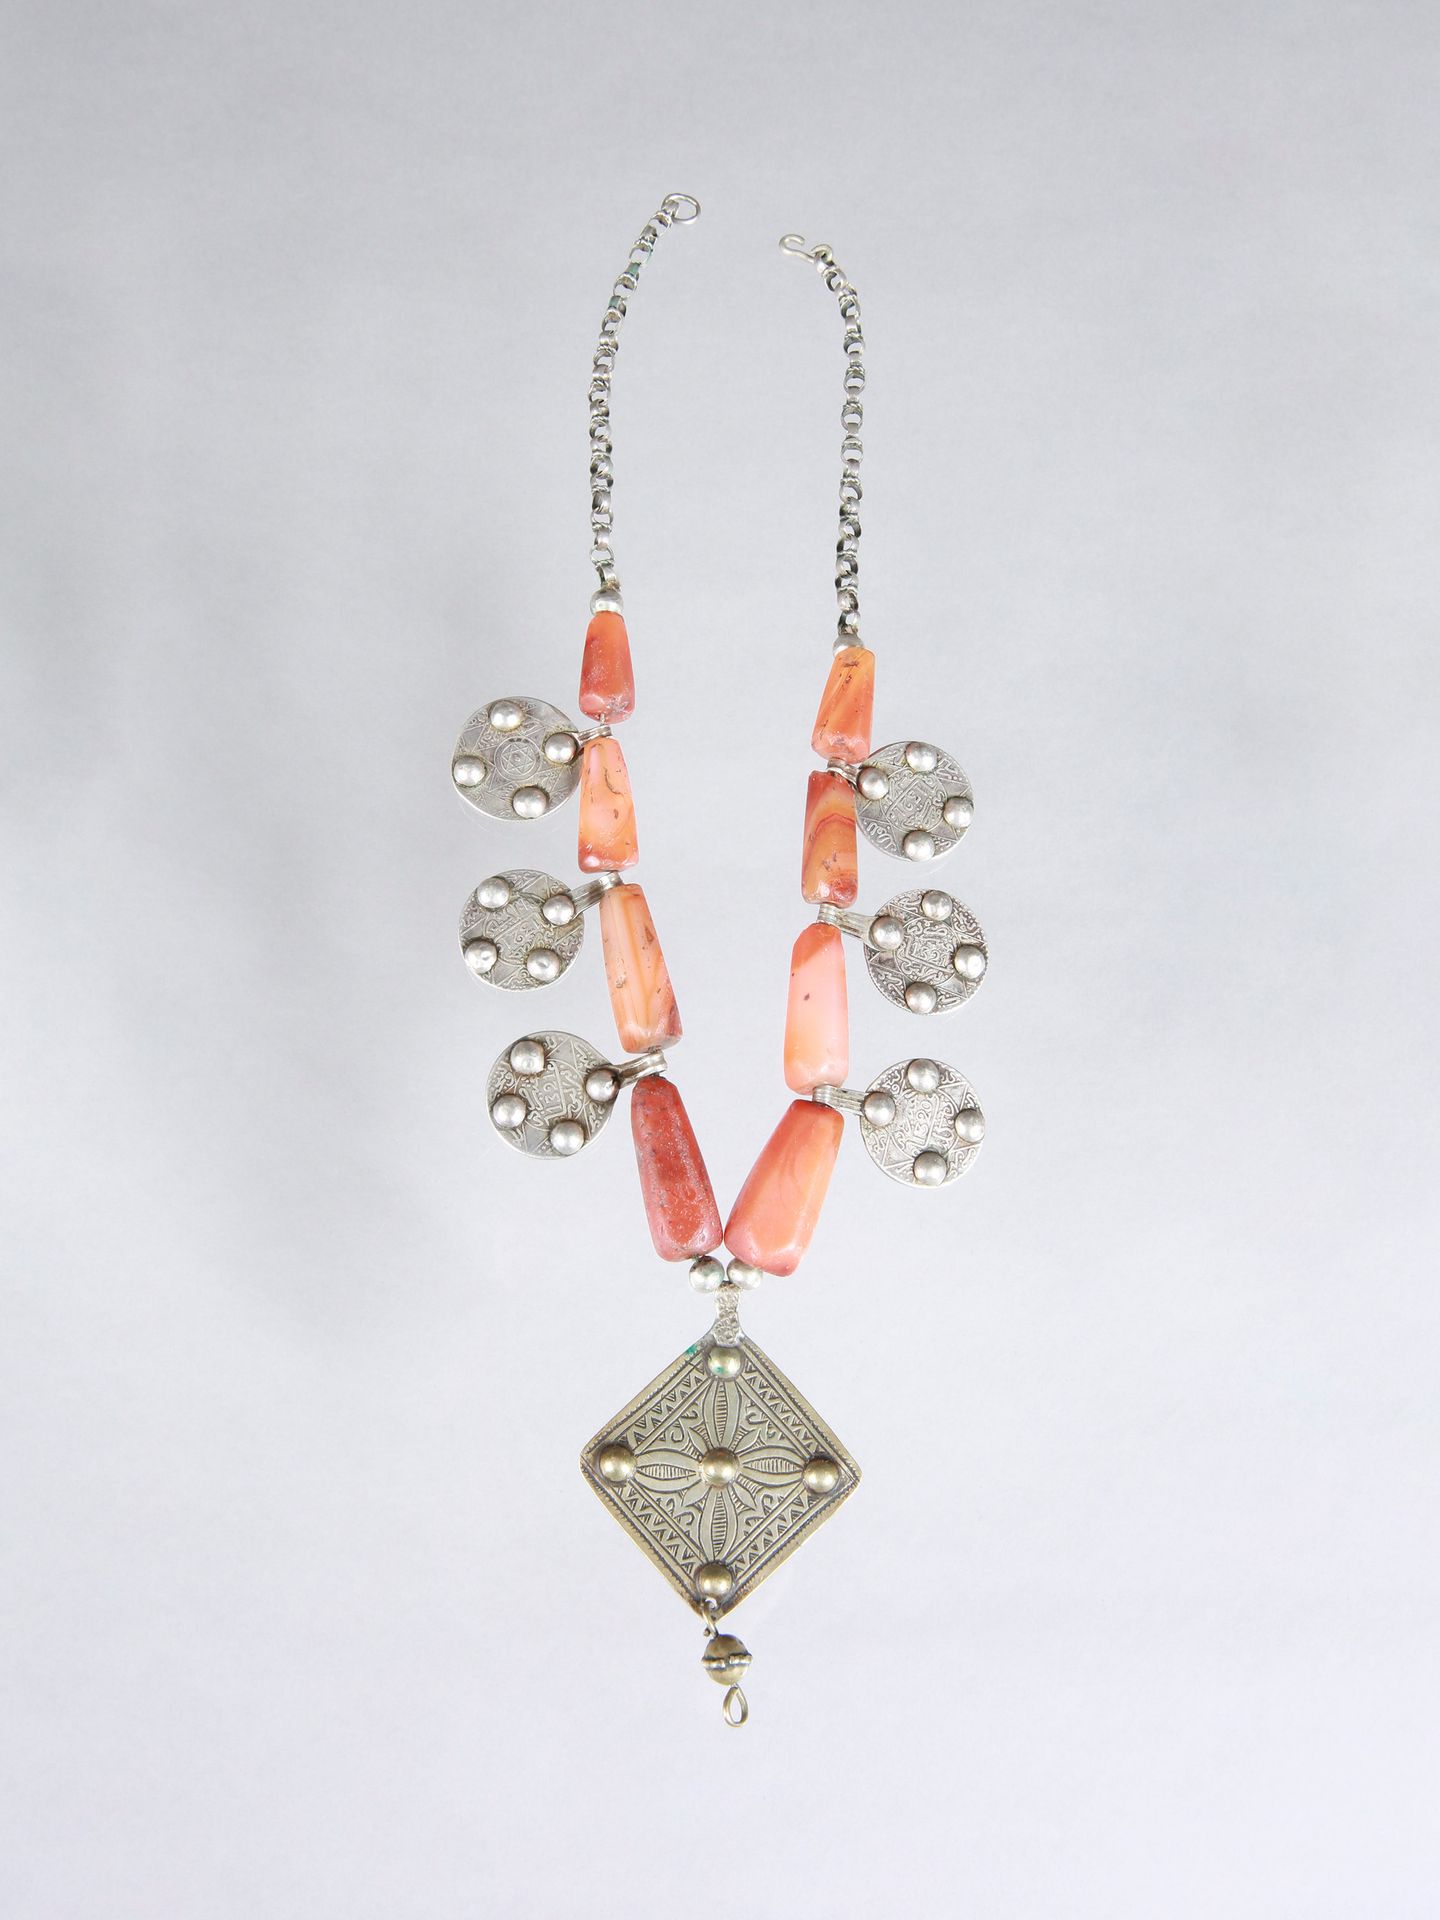 A Berber Necklace with seven Pendants Collier mit sieben Schmuck-Anhängern

Berb&hellip;